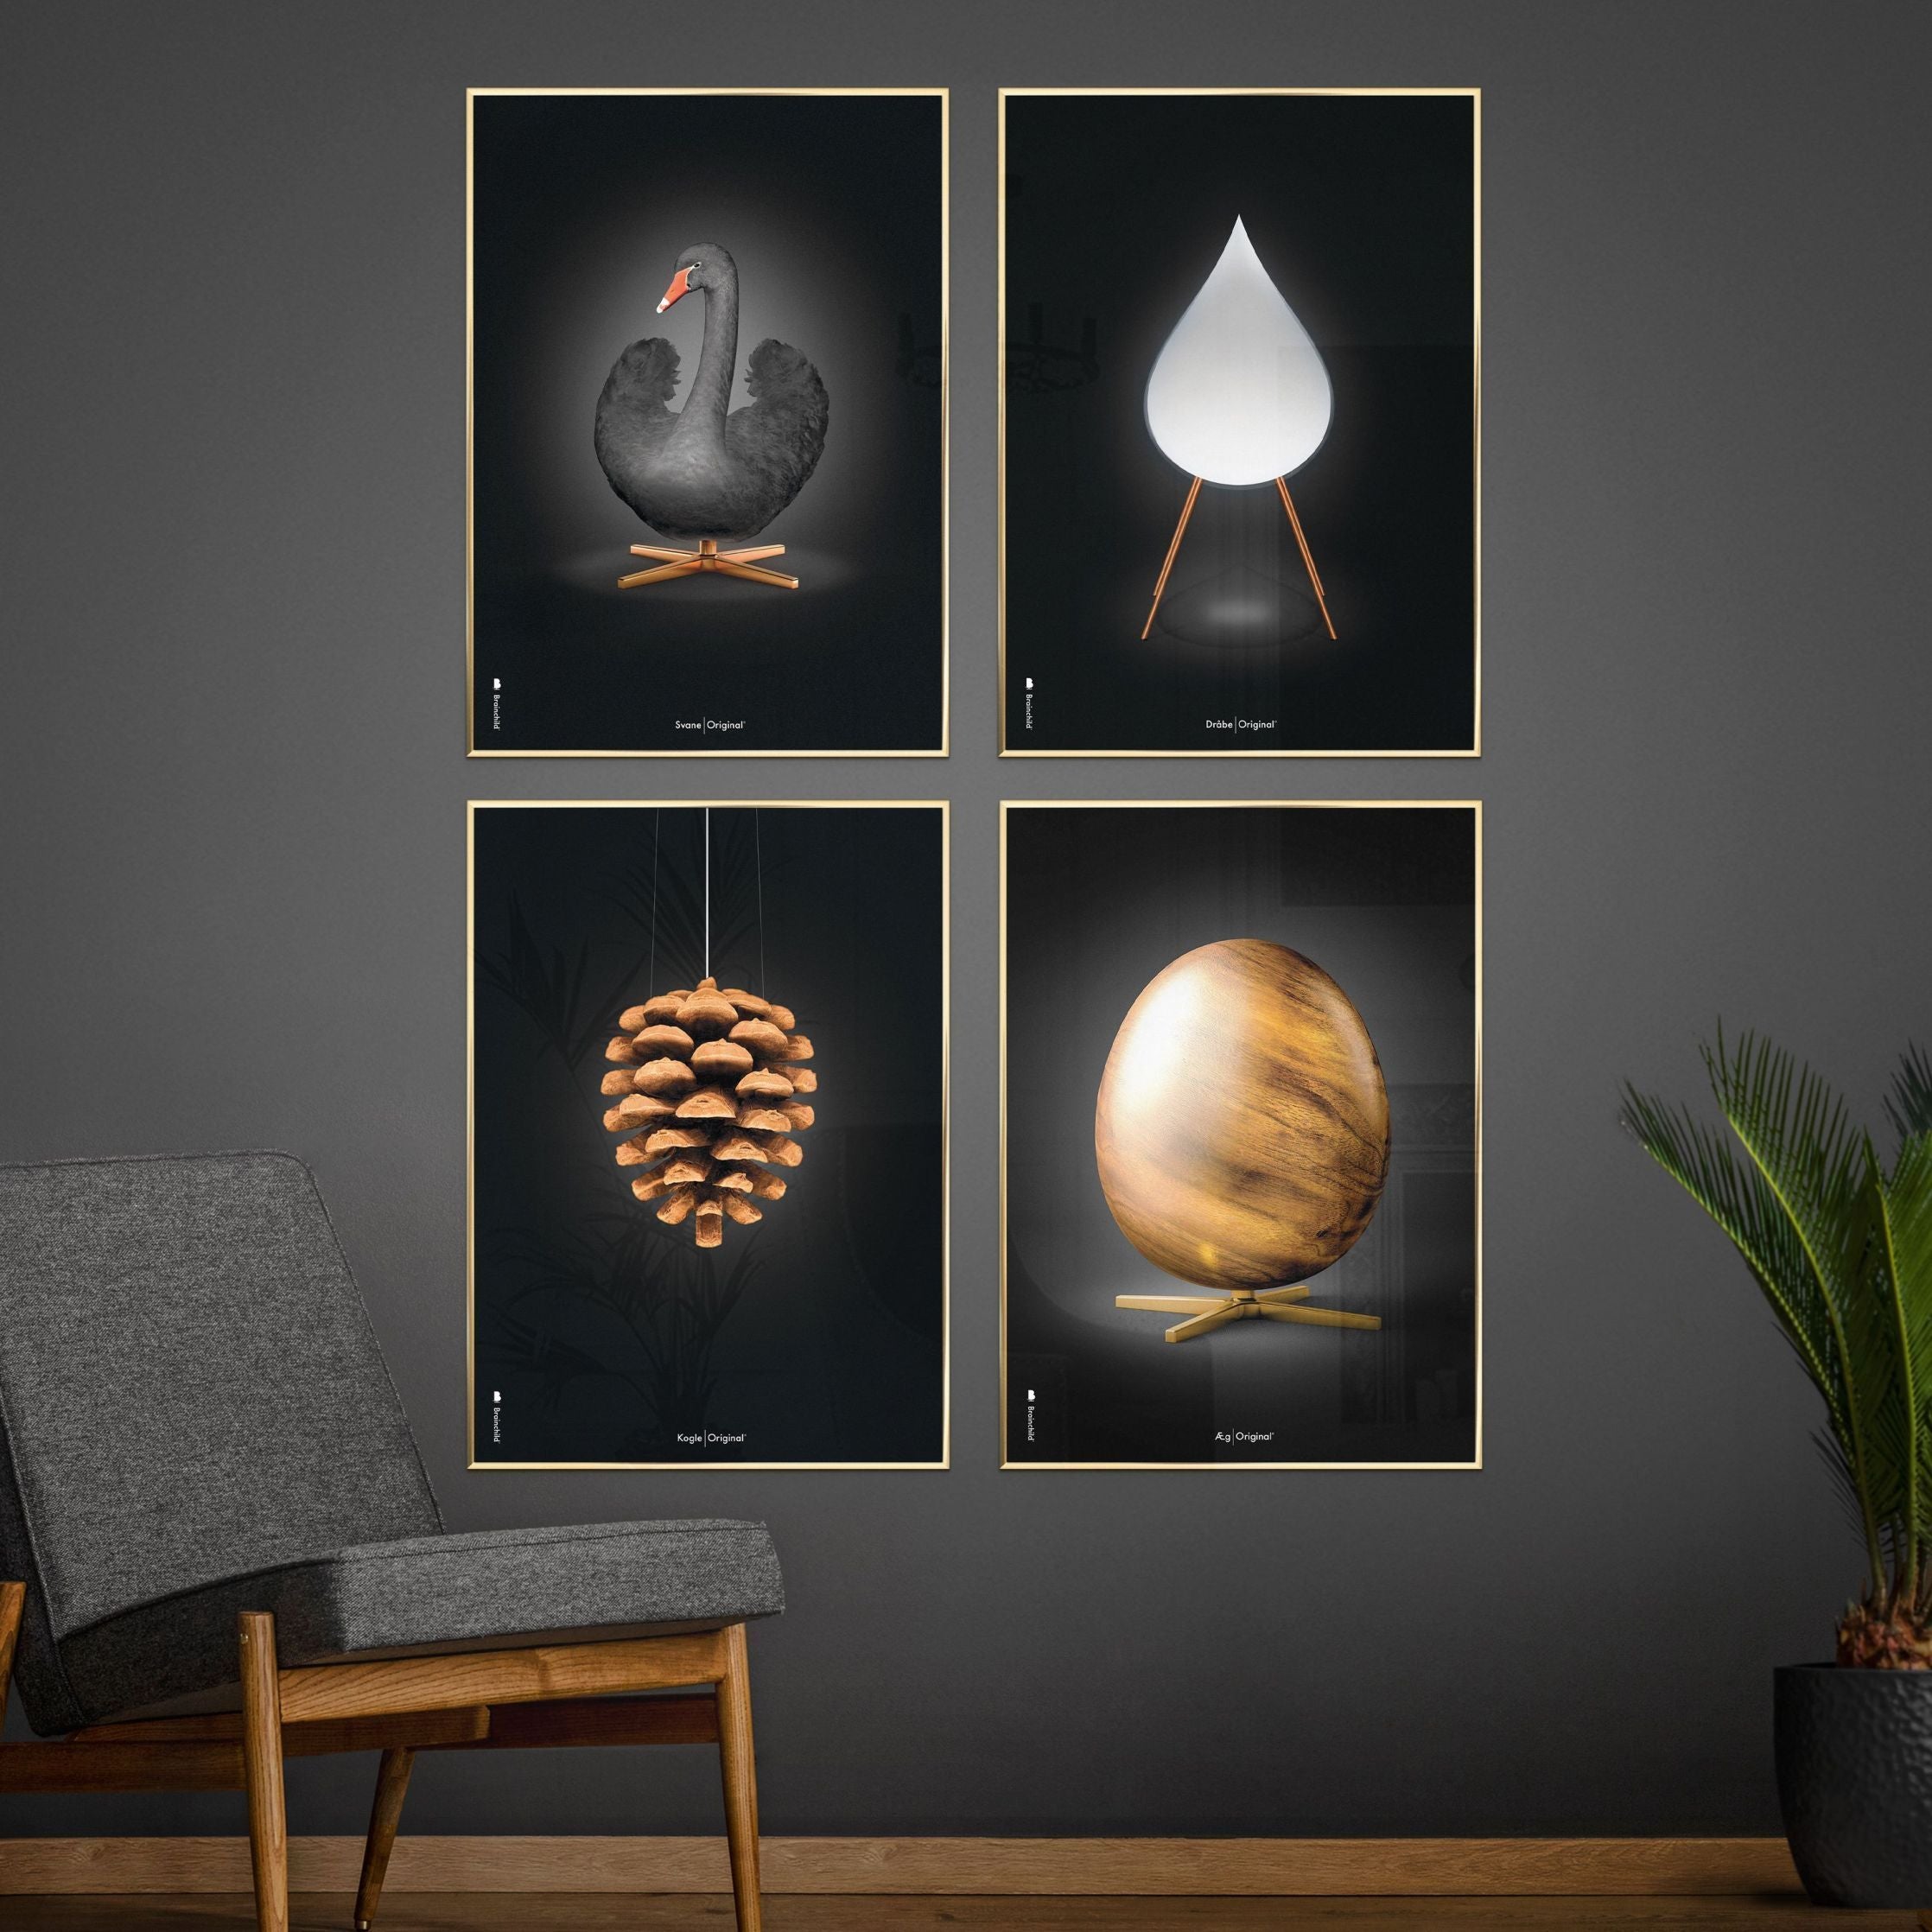 Brainchild Egg Figures Poster, Frame Made Of Light Wood 30x40 Cm, Black